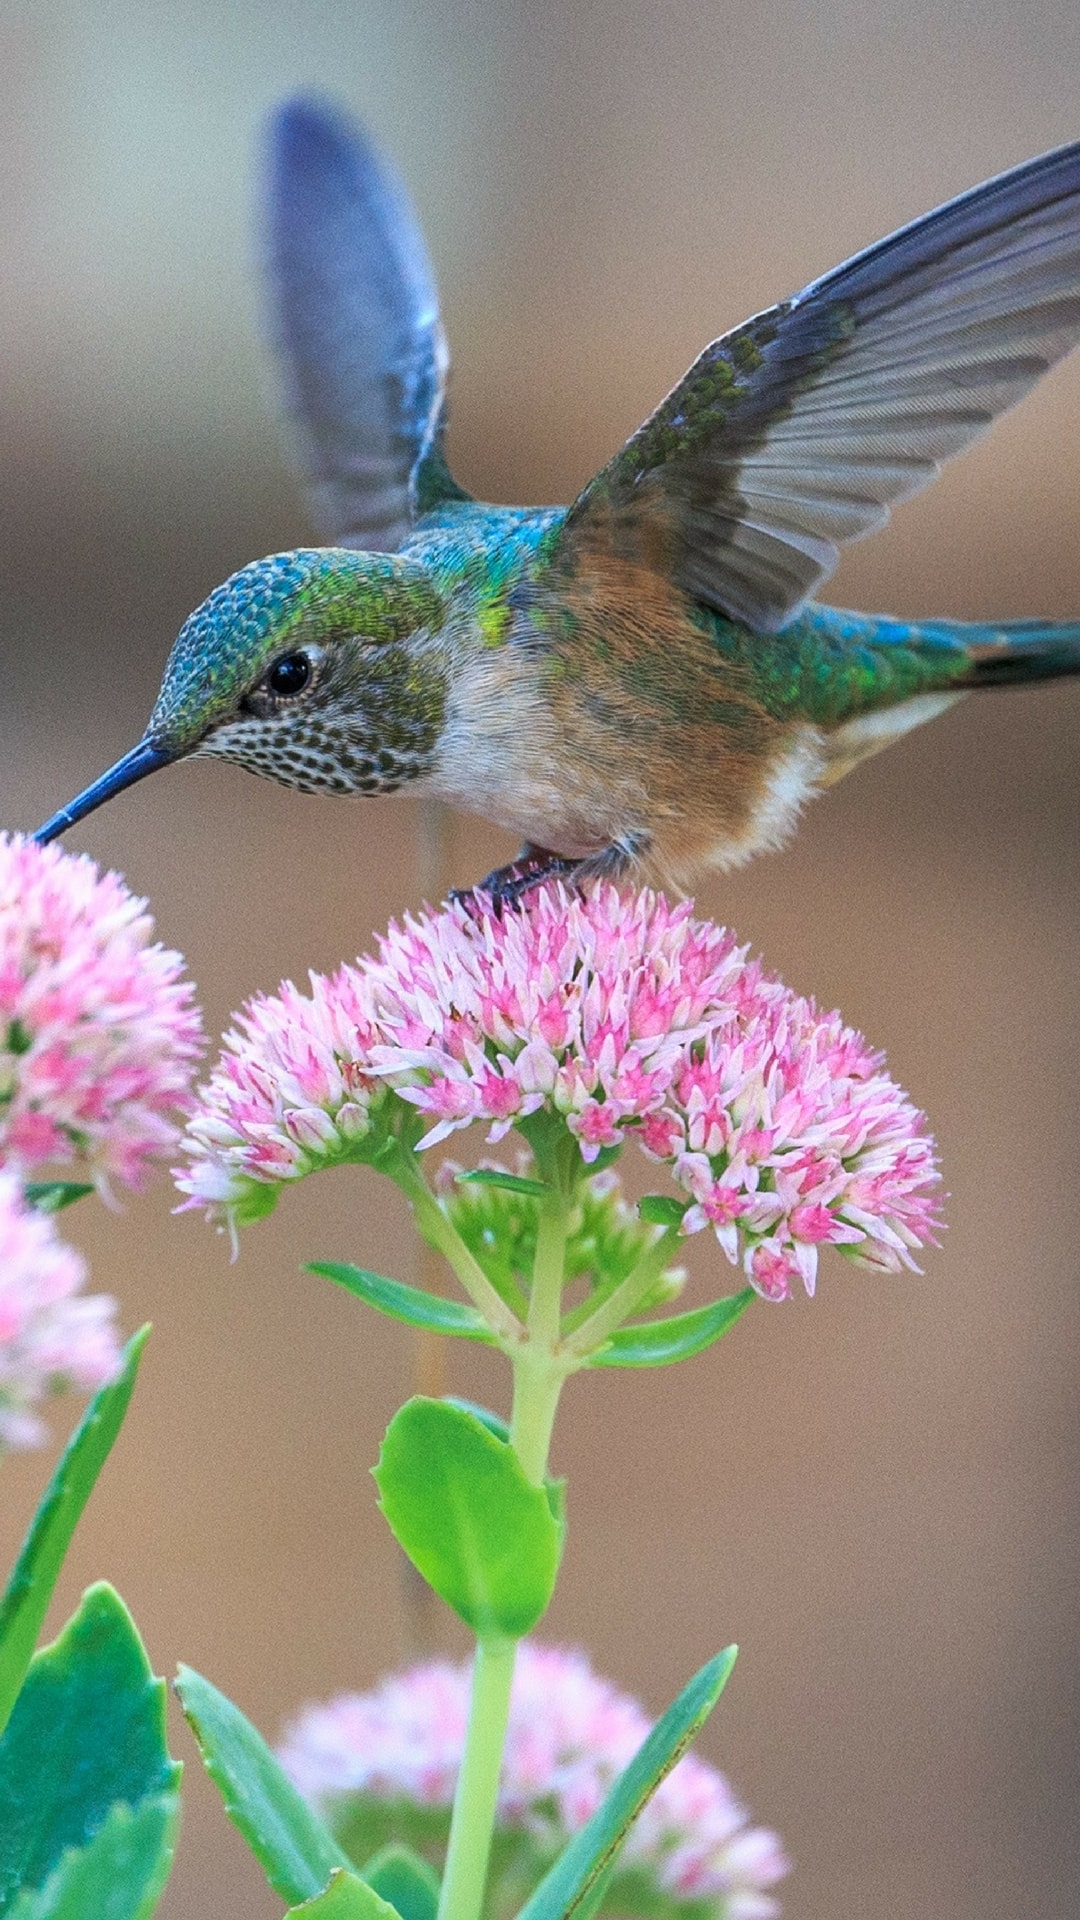 fonds d'écran hd gratuits pour mobile android,colibri,oiseau,colibri roux,plante,fleur